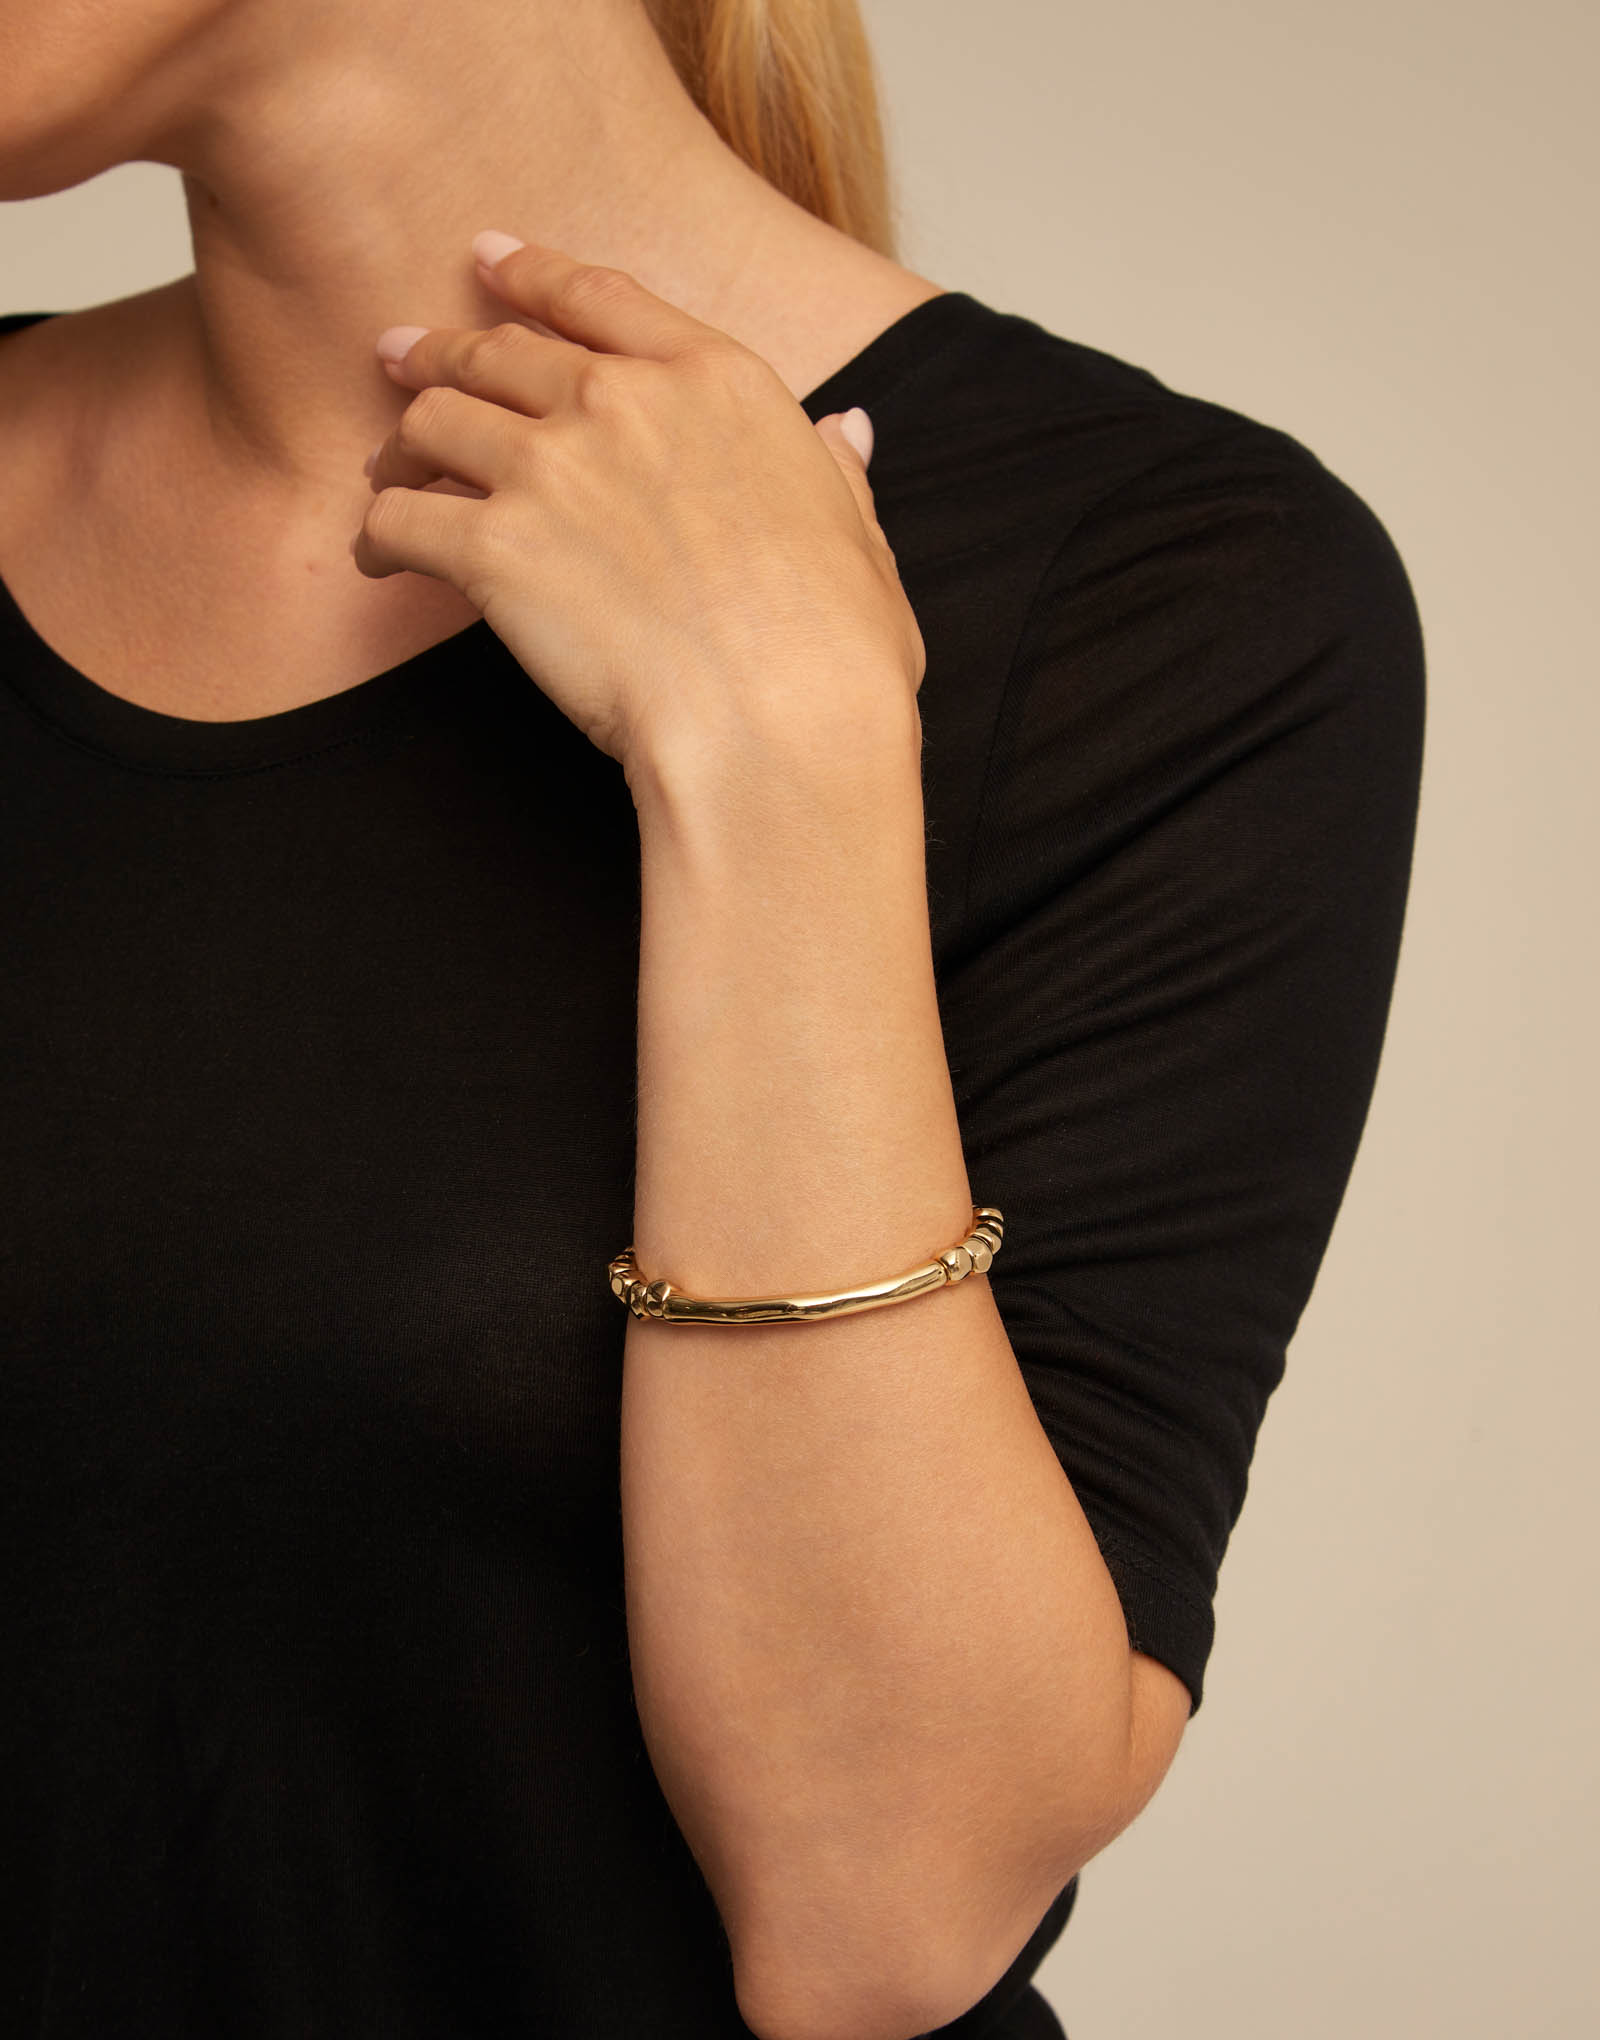 18K gold-plated bead bracelet, Golden, large image number null